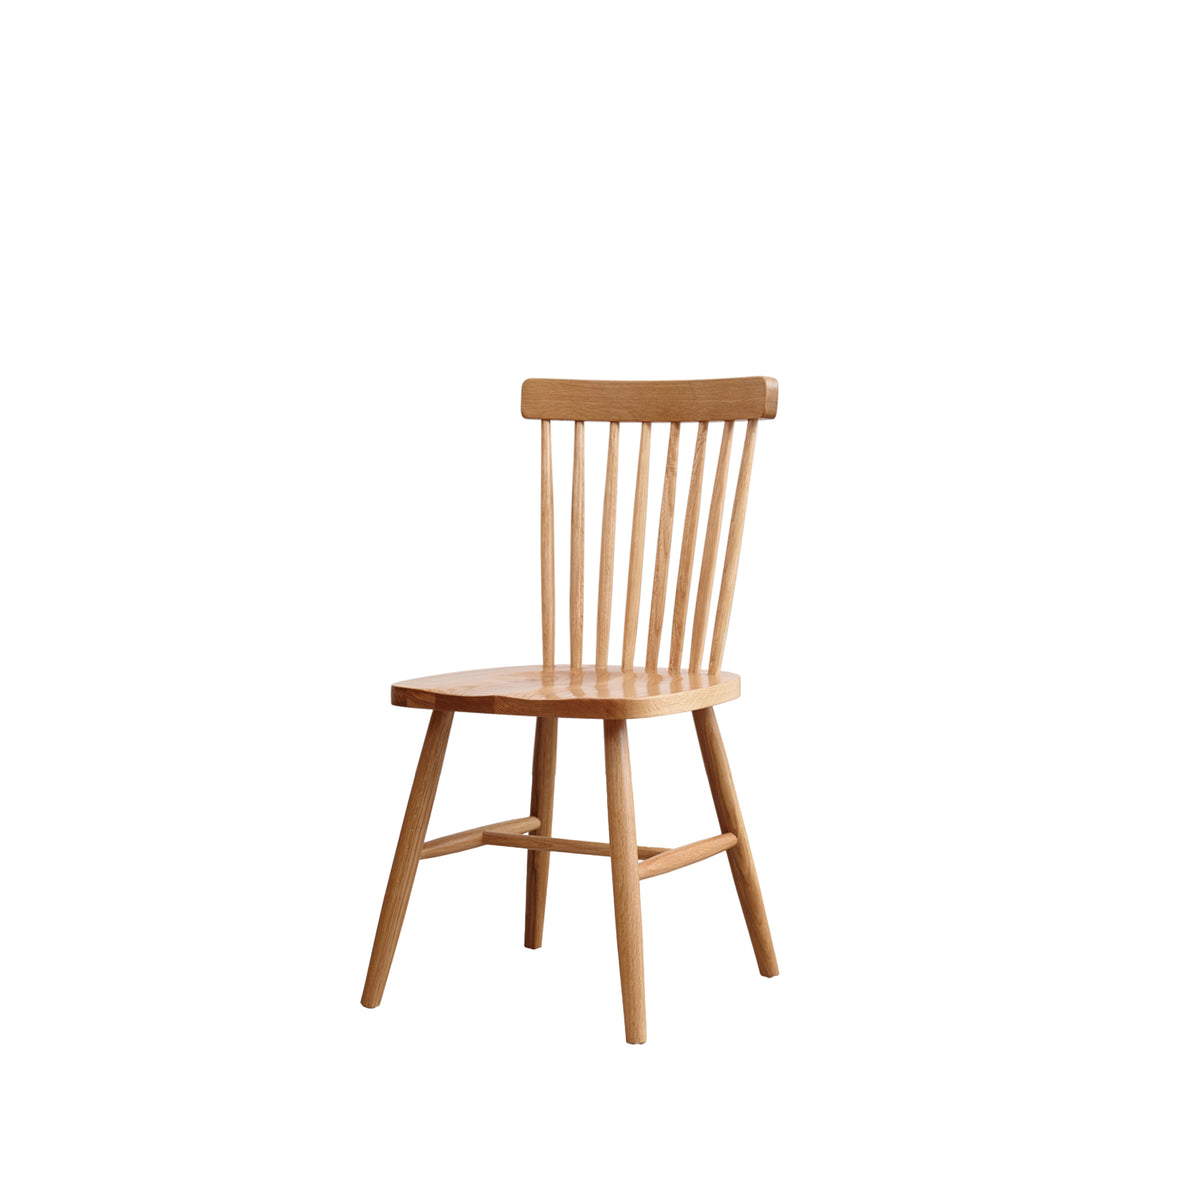 LIGNOL 橡木餐椅